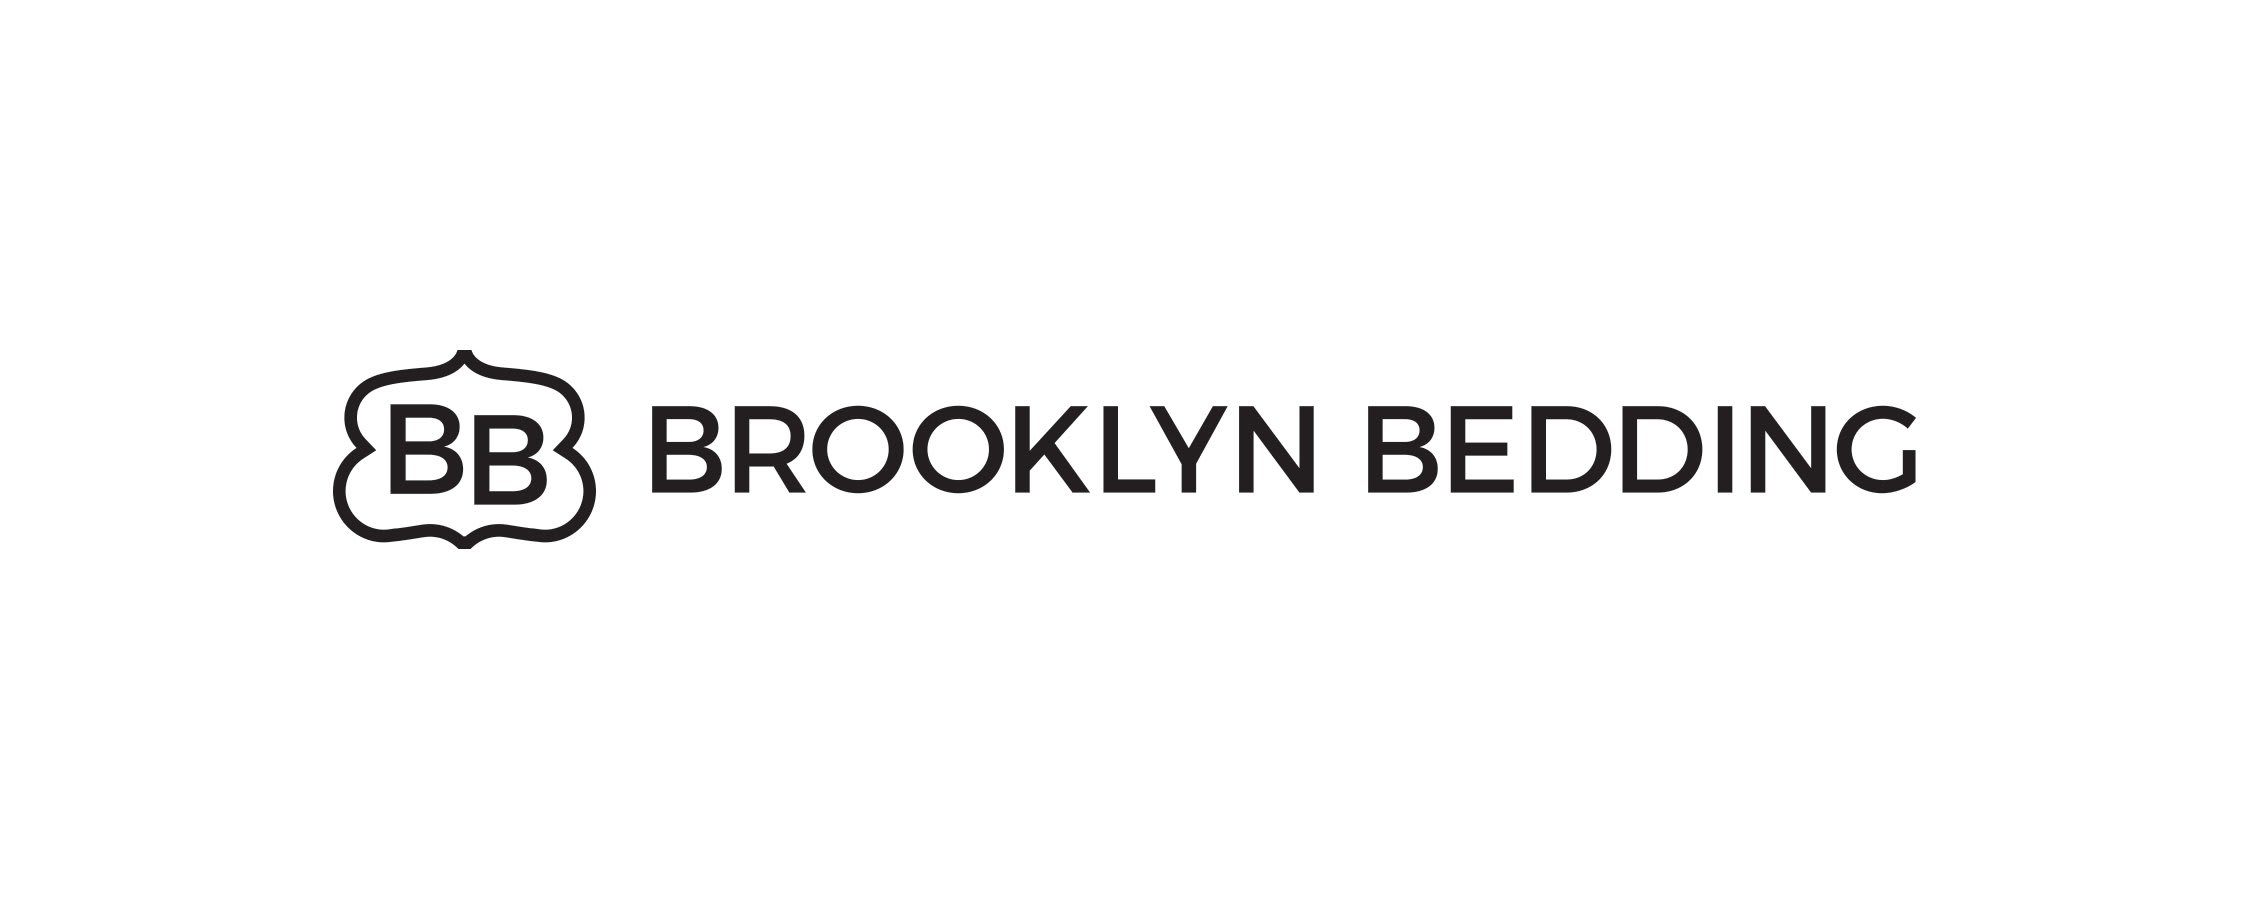 Brooklyn Bedding Logo in black